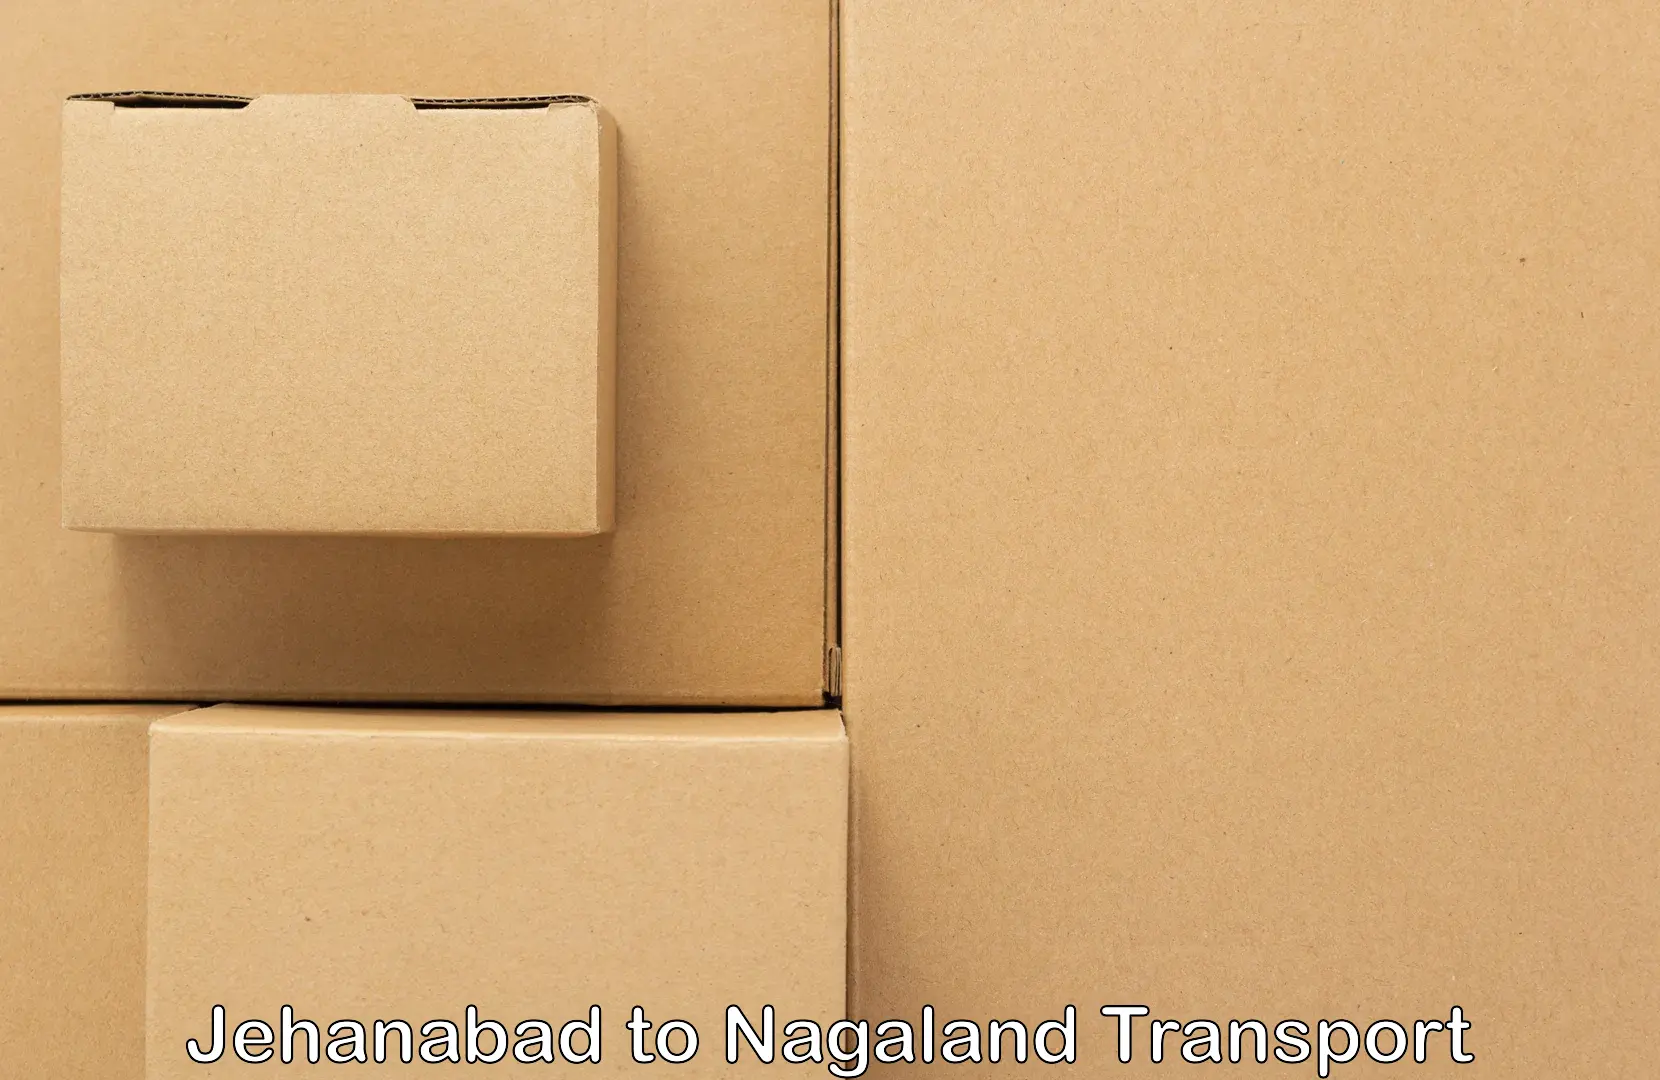 All India transport service Jehanabad to Nagaland